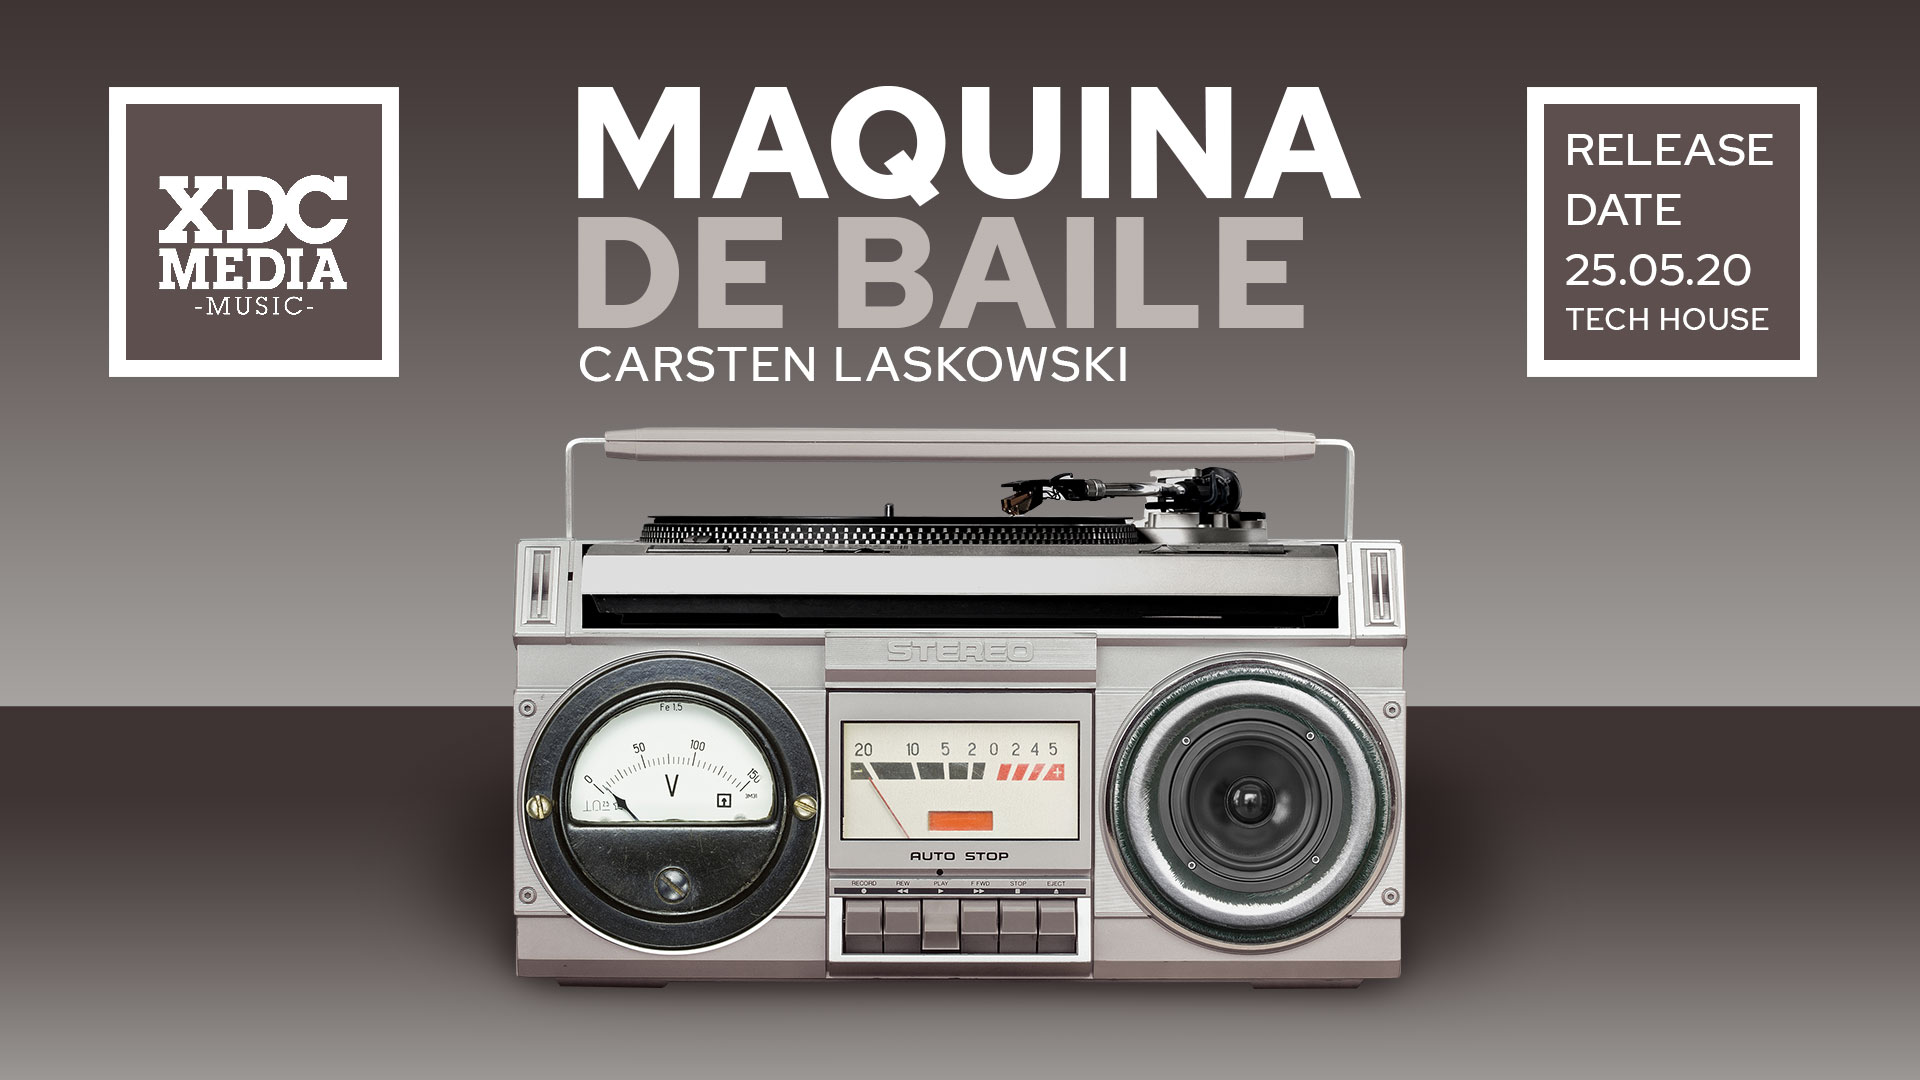 maquina_de_baile_carsten_laskowski_wide.jpg